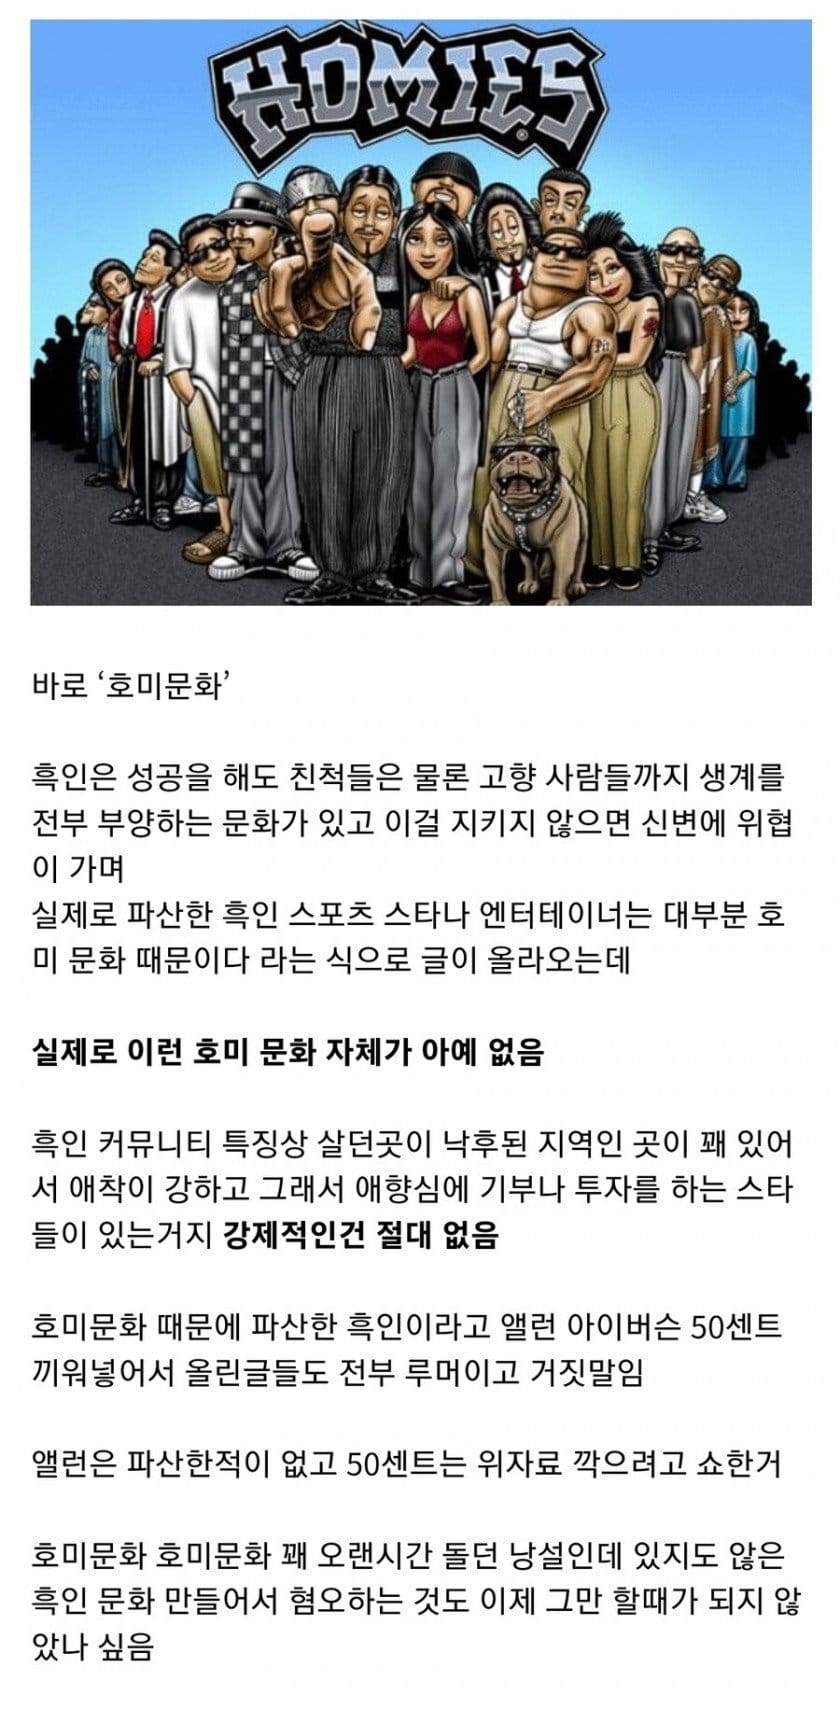 한국에서 널리 퍼져있는 흑인 문화에 대한 오해.jpg